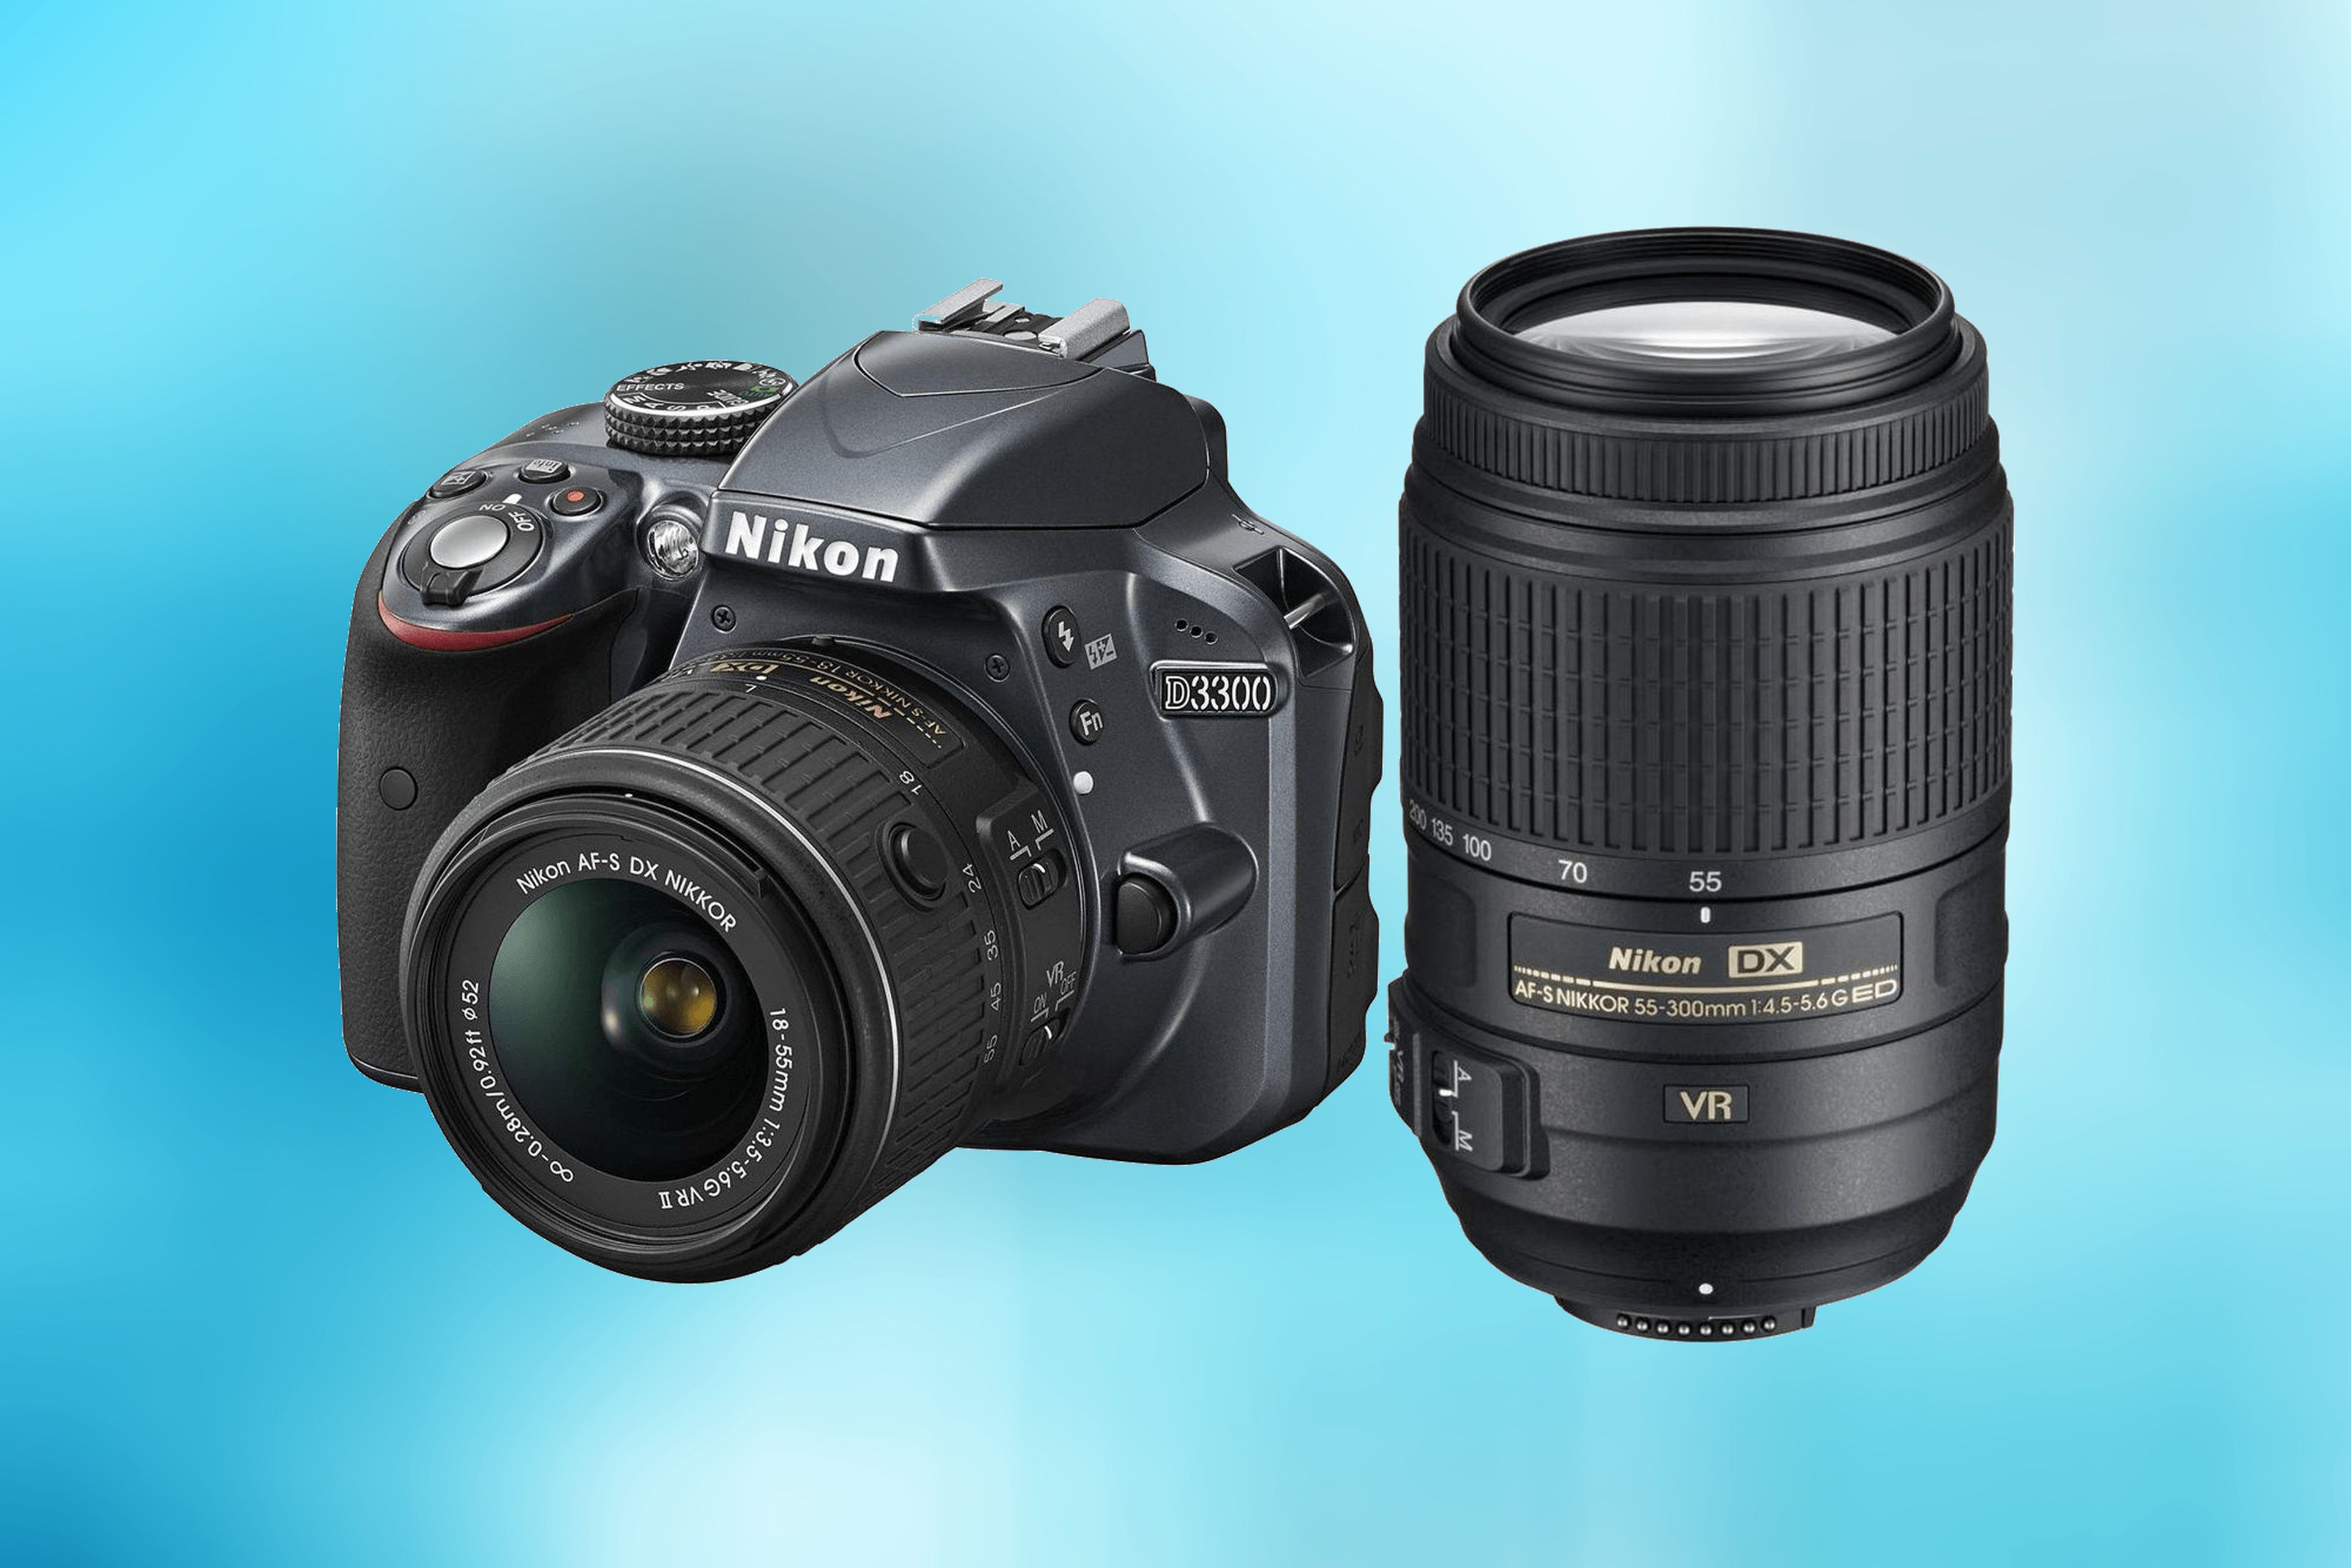 Da tus primeros pasos como fotógrafo con réflex barata: la Nikon D3300, rebajada a sólo 250€ | Computer Hoy